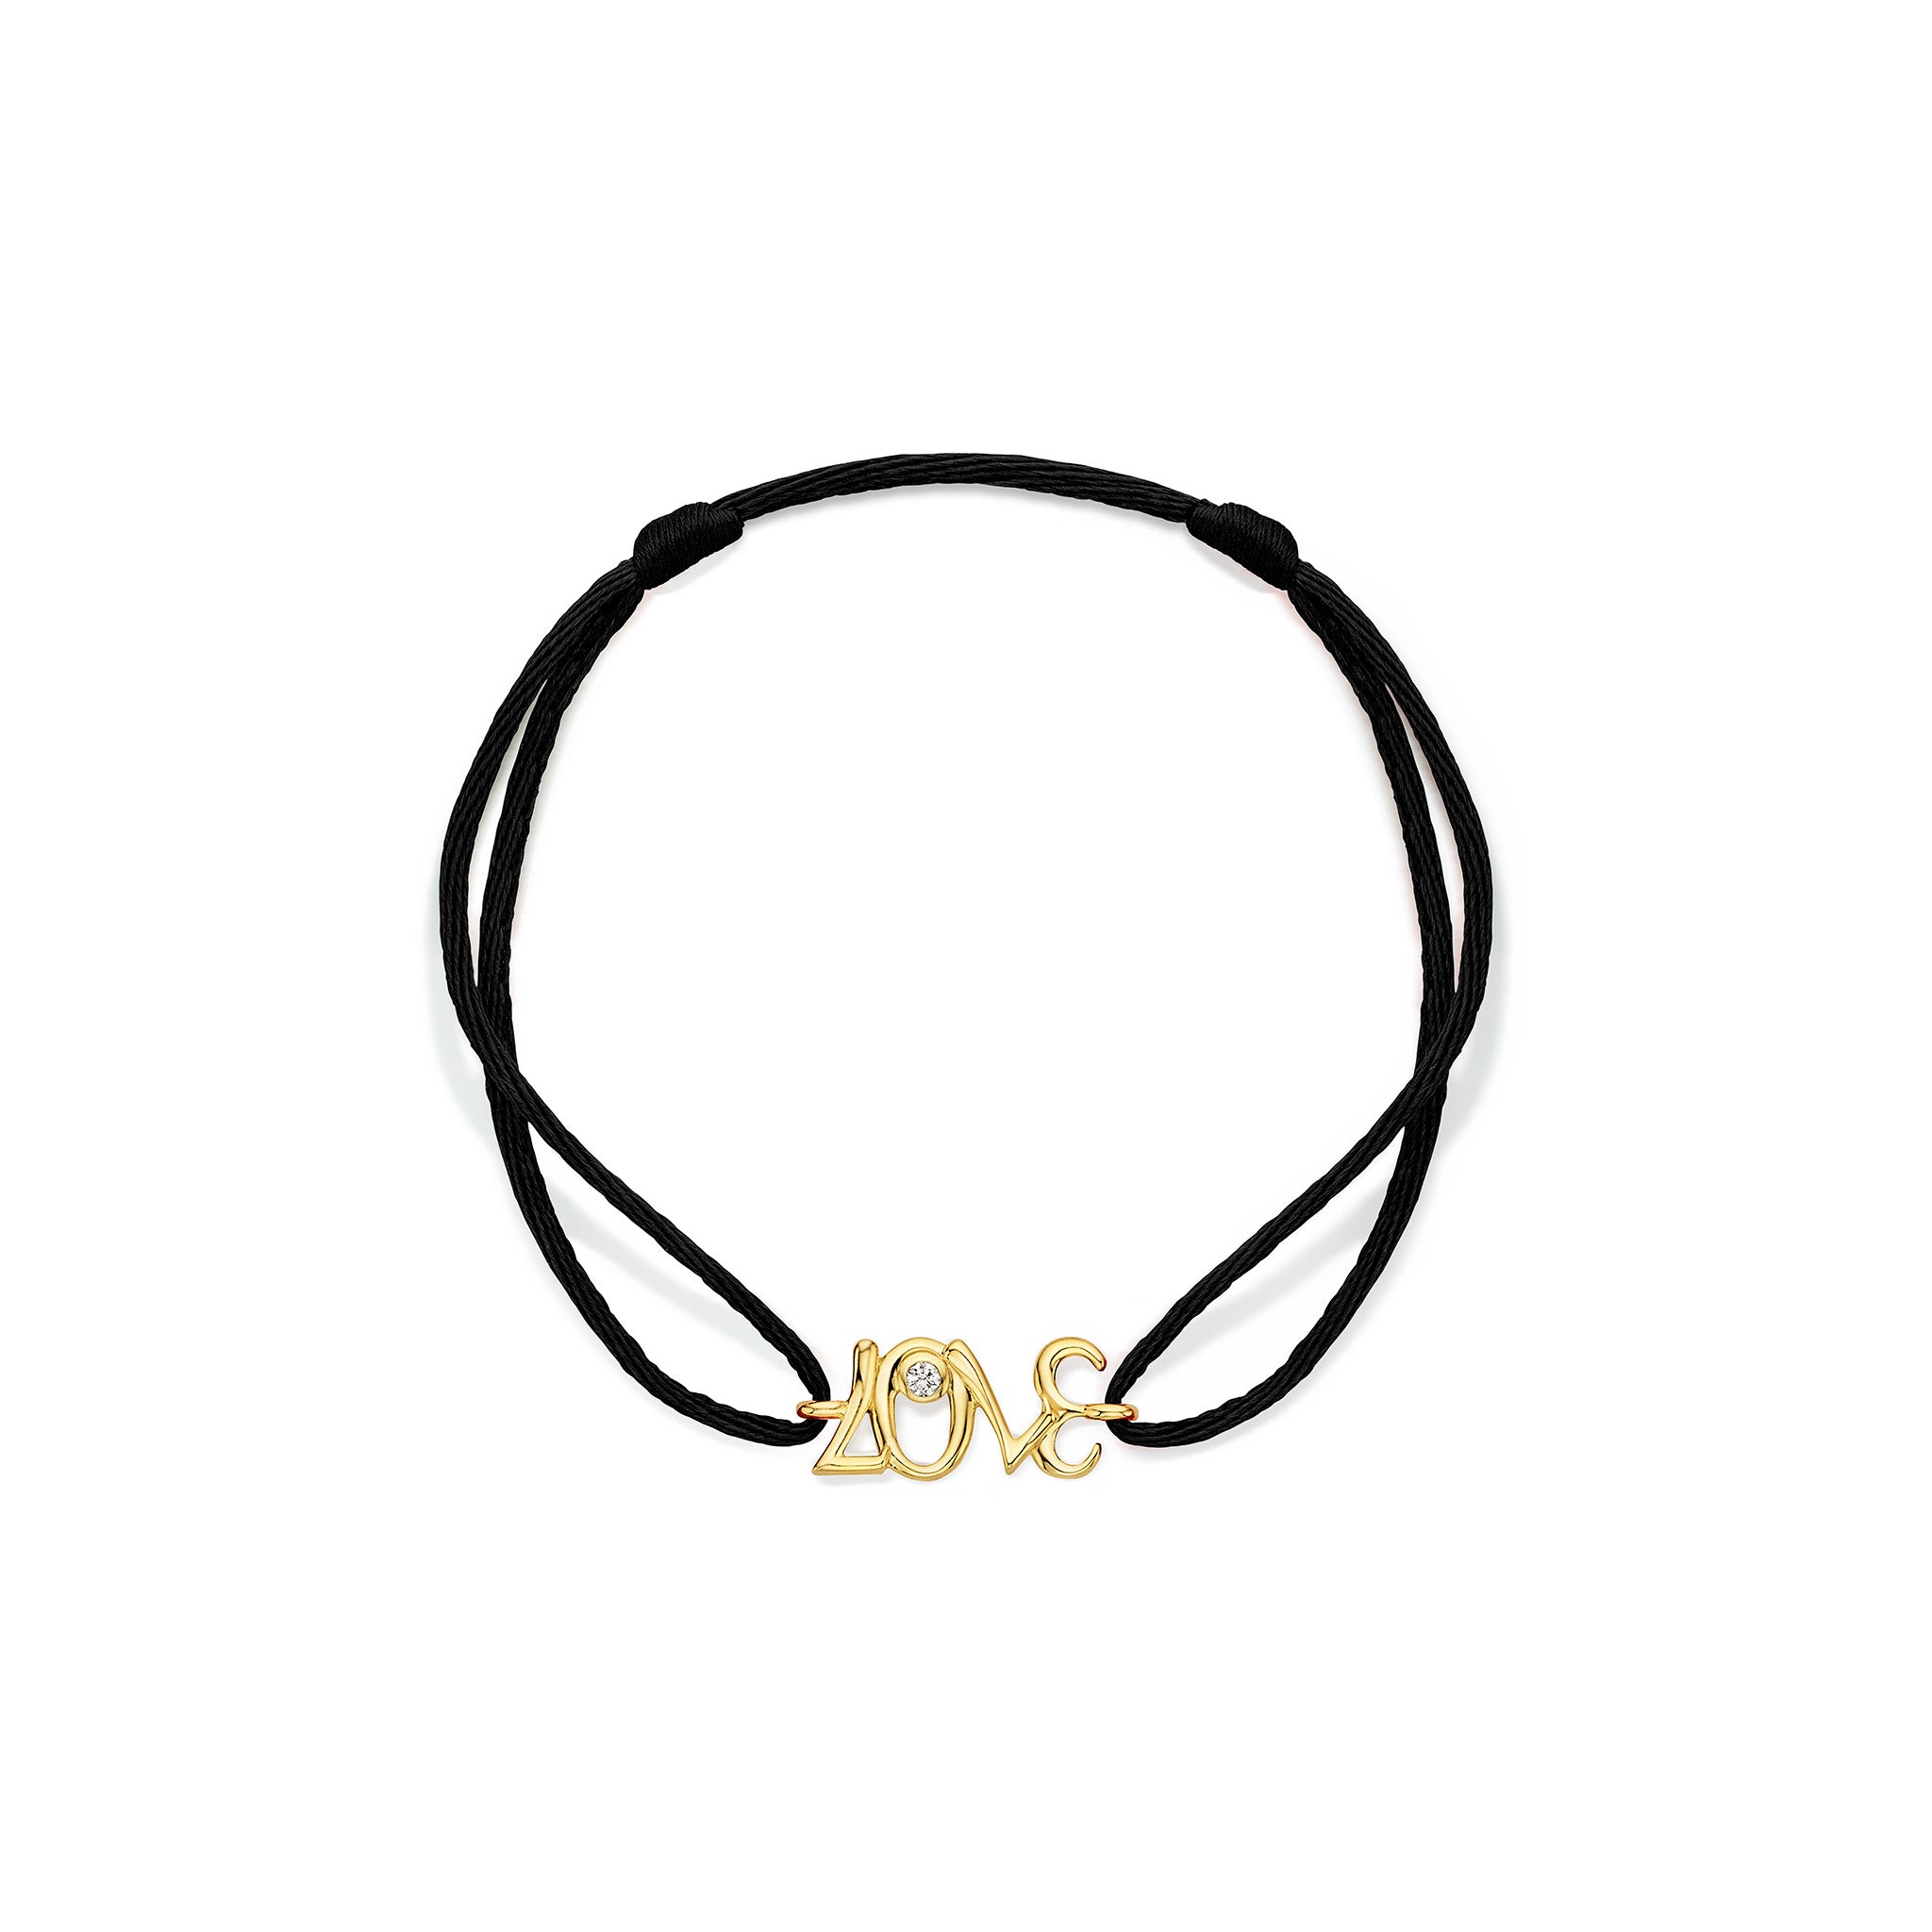 Eros LOVE Black Cord Bracelet with Diamonds in 18K